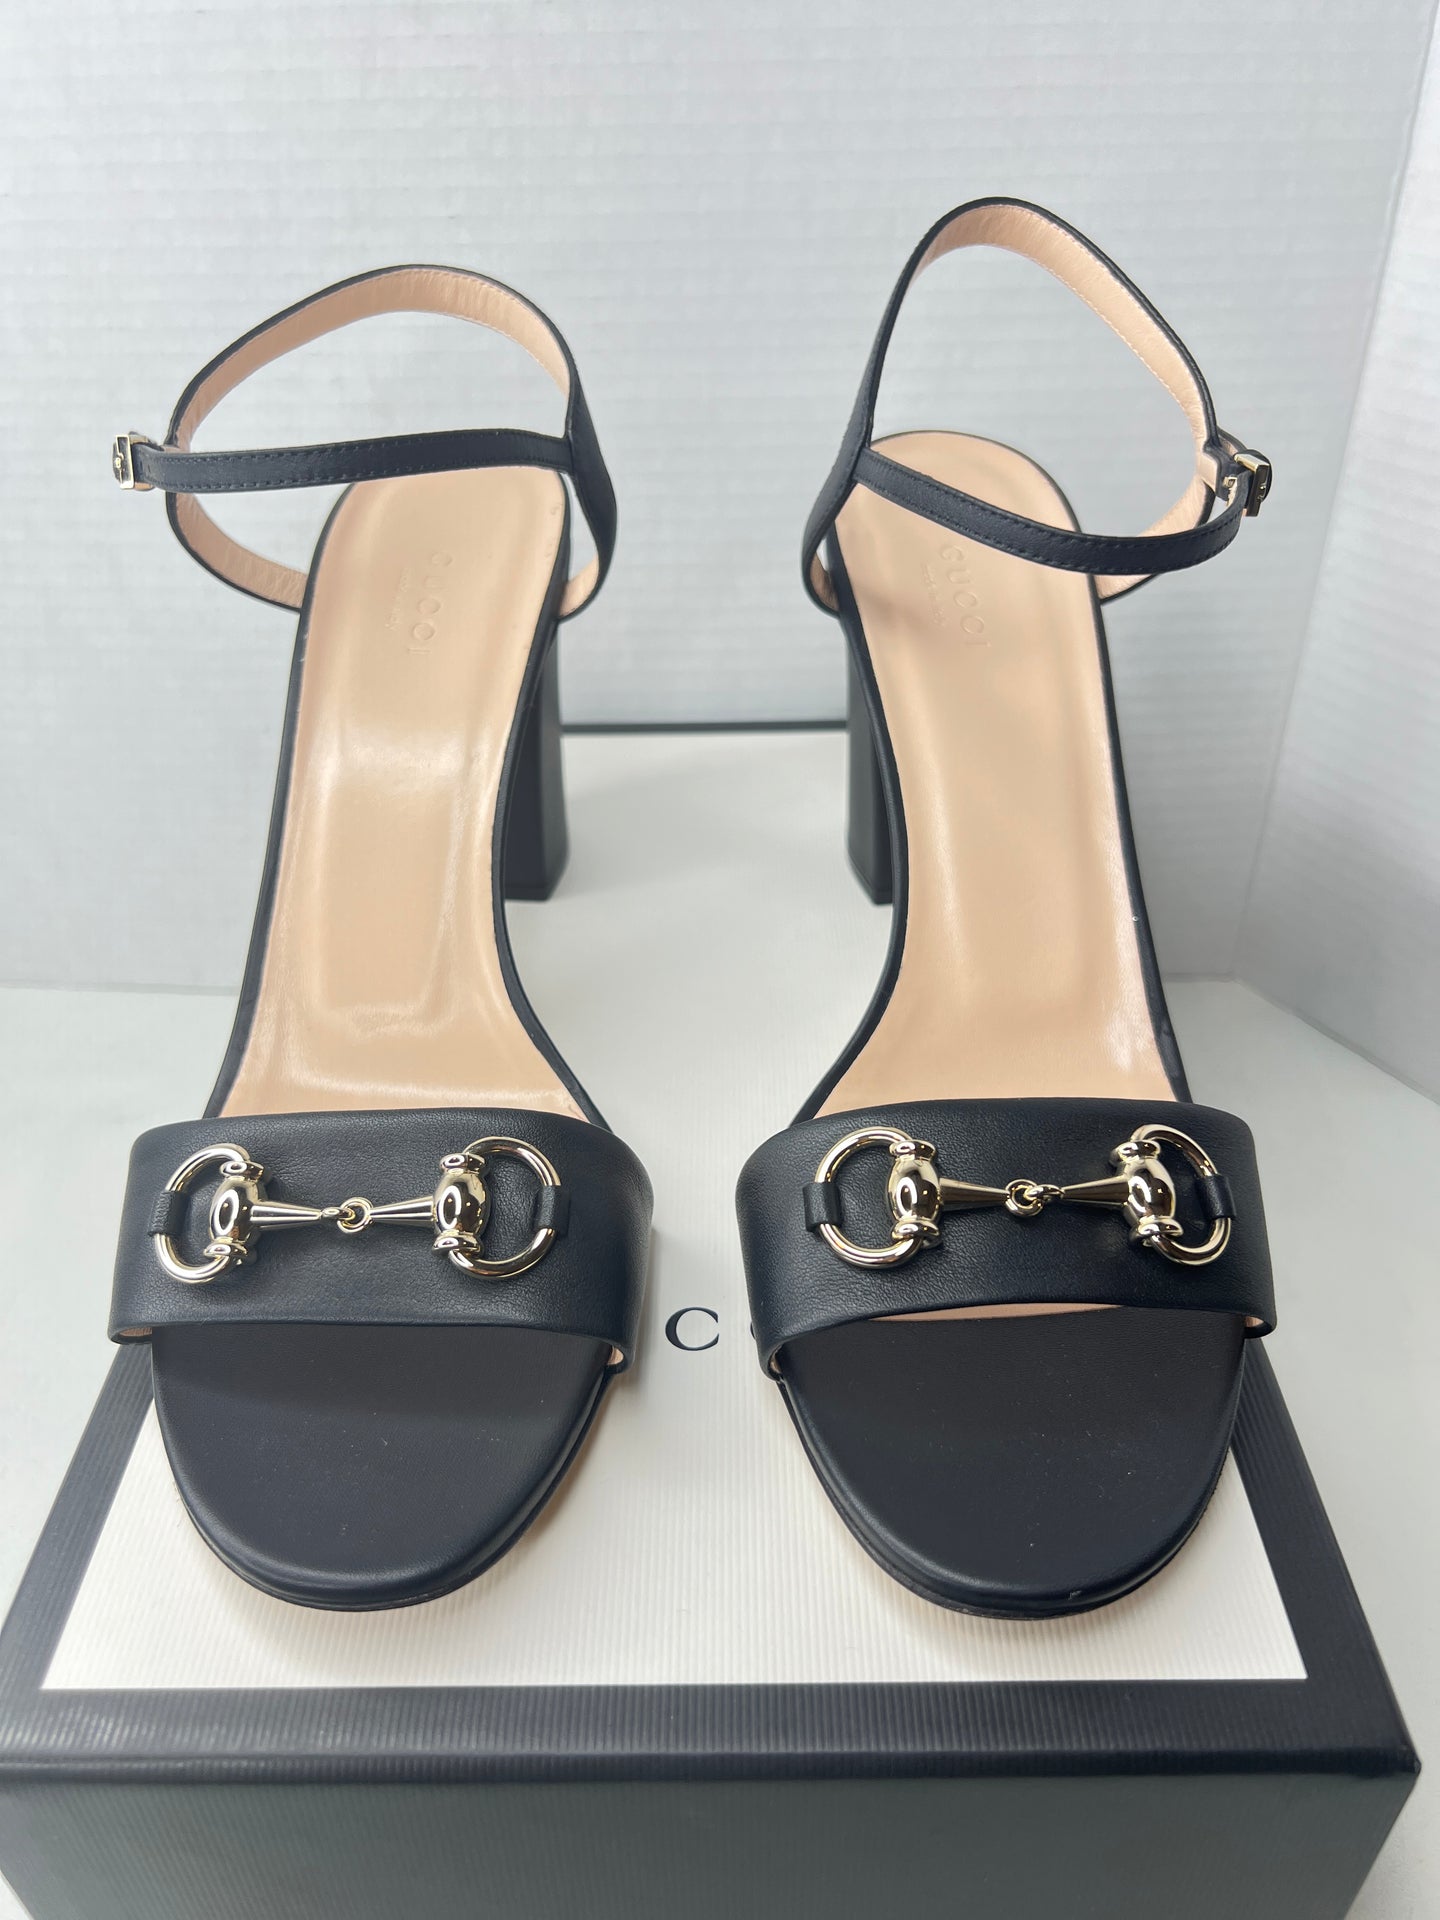 Gucci horsebit block heel sandals size 41.5 / 11.5